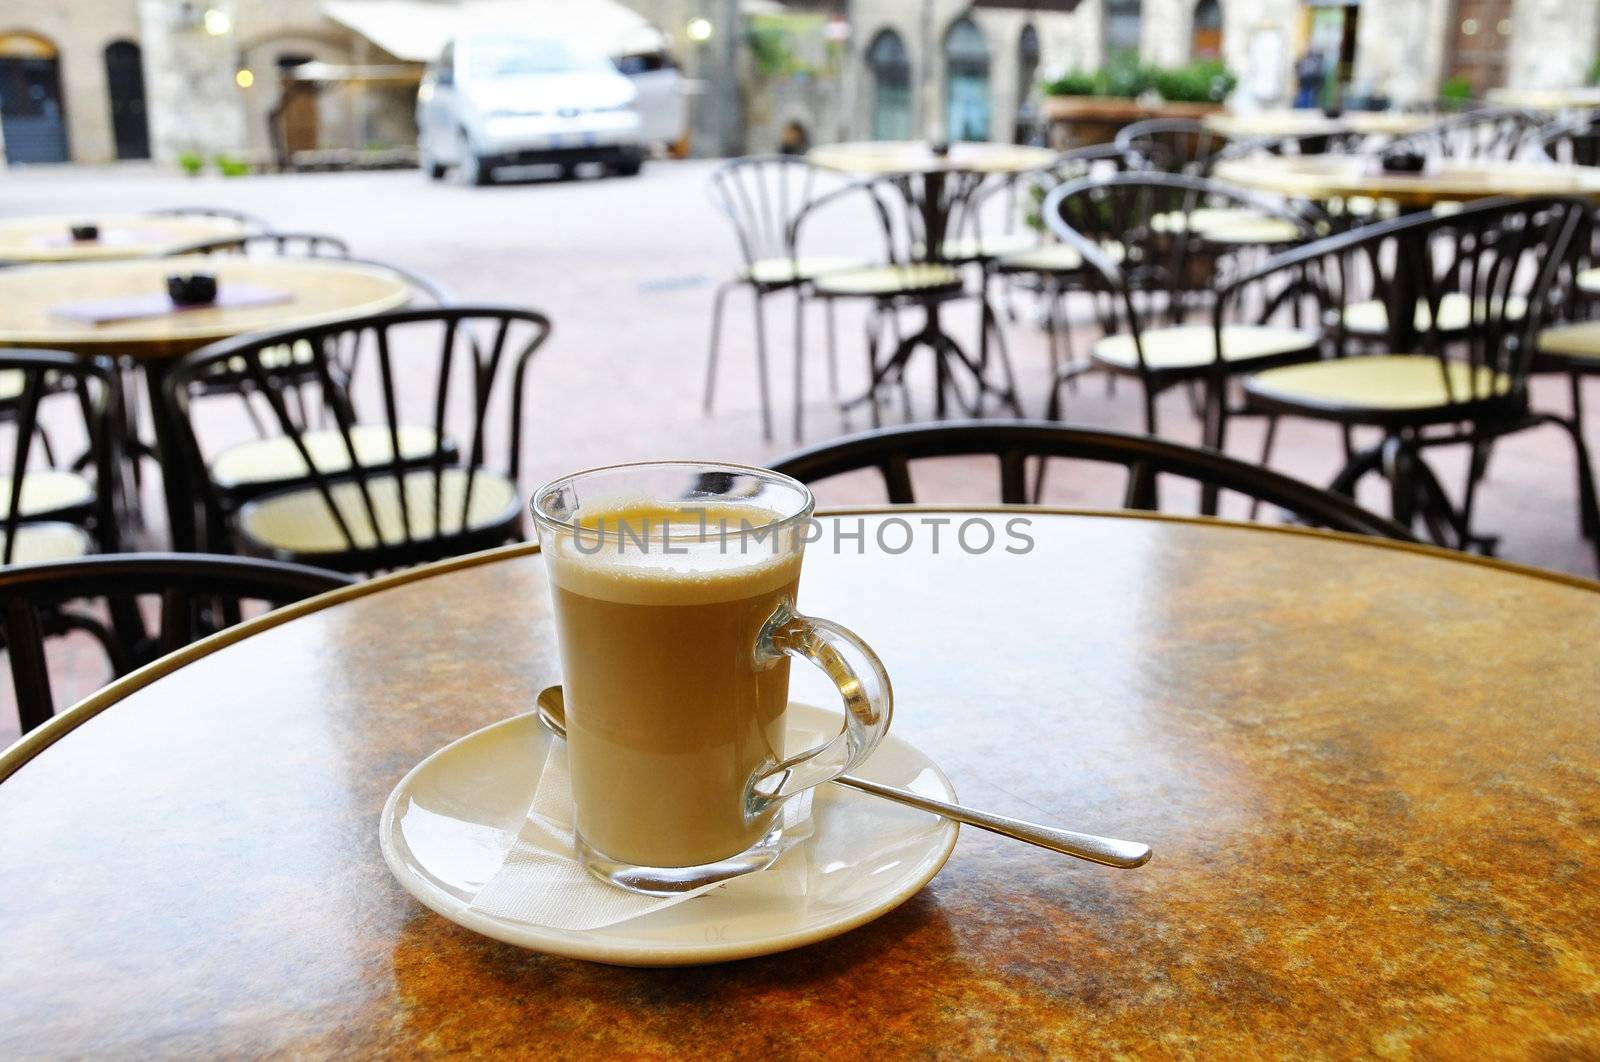 Cafe latte in an Italian village